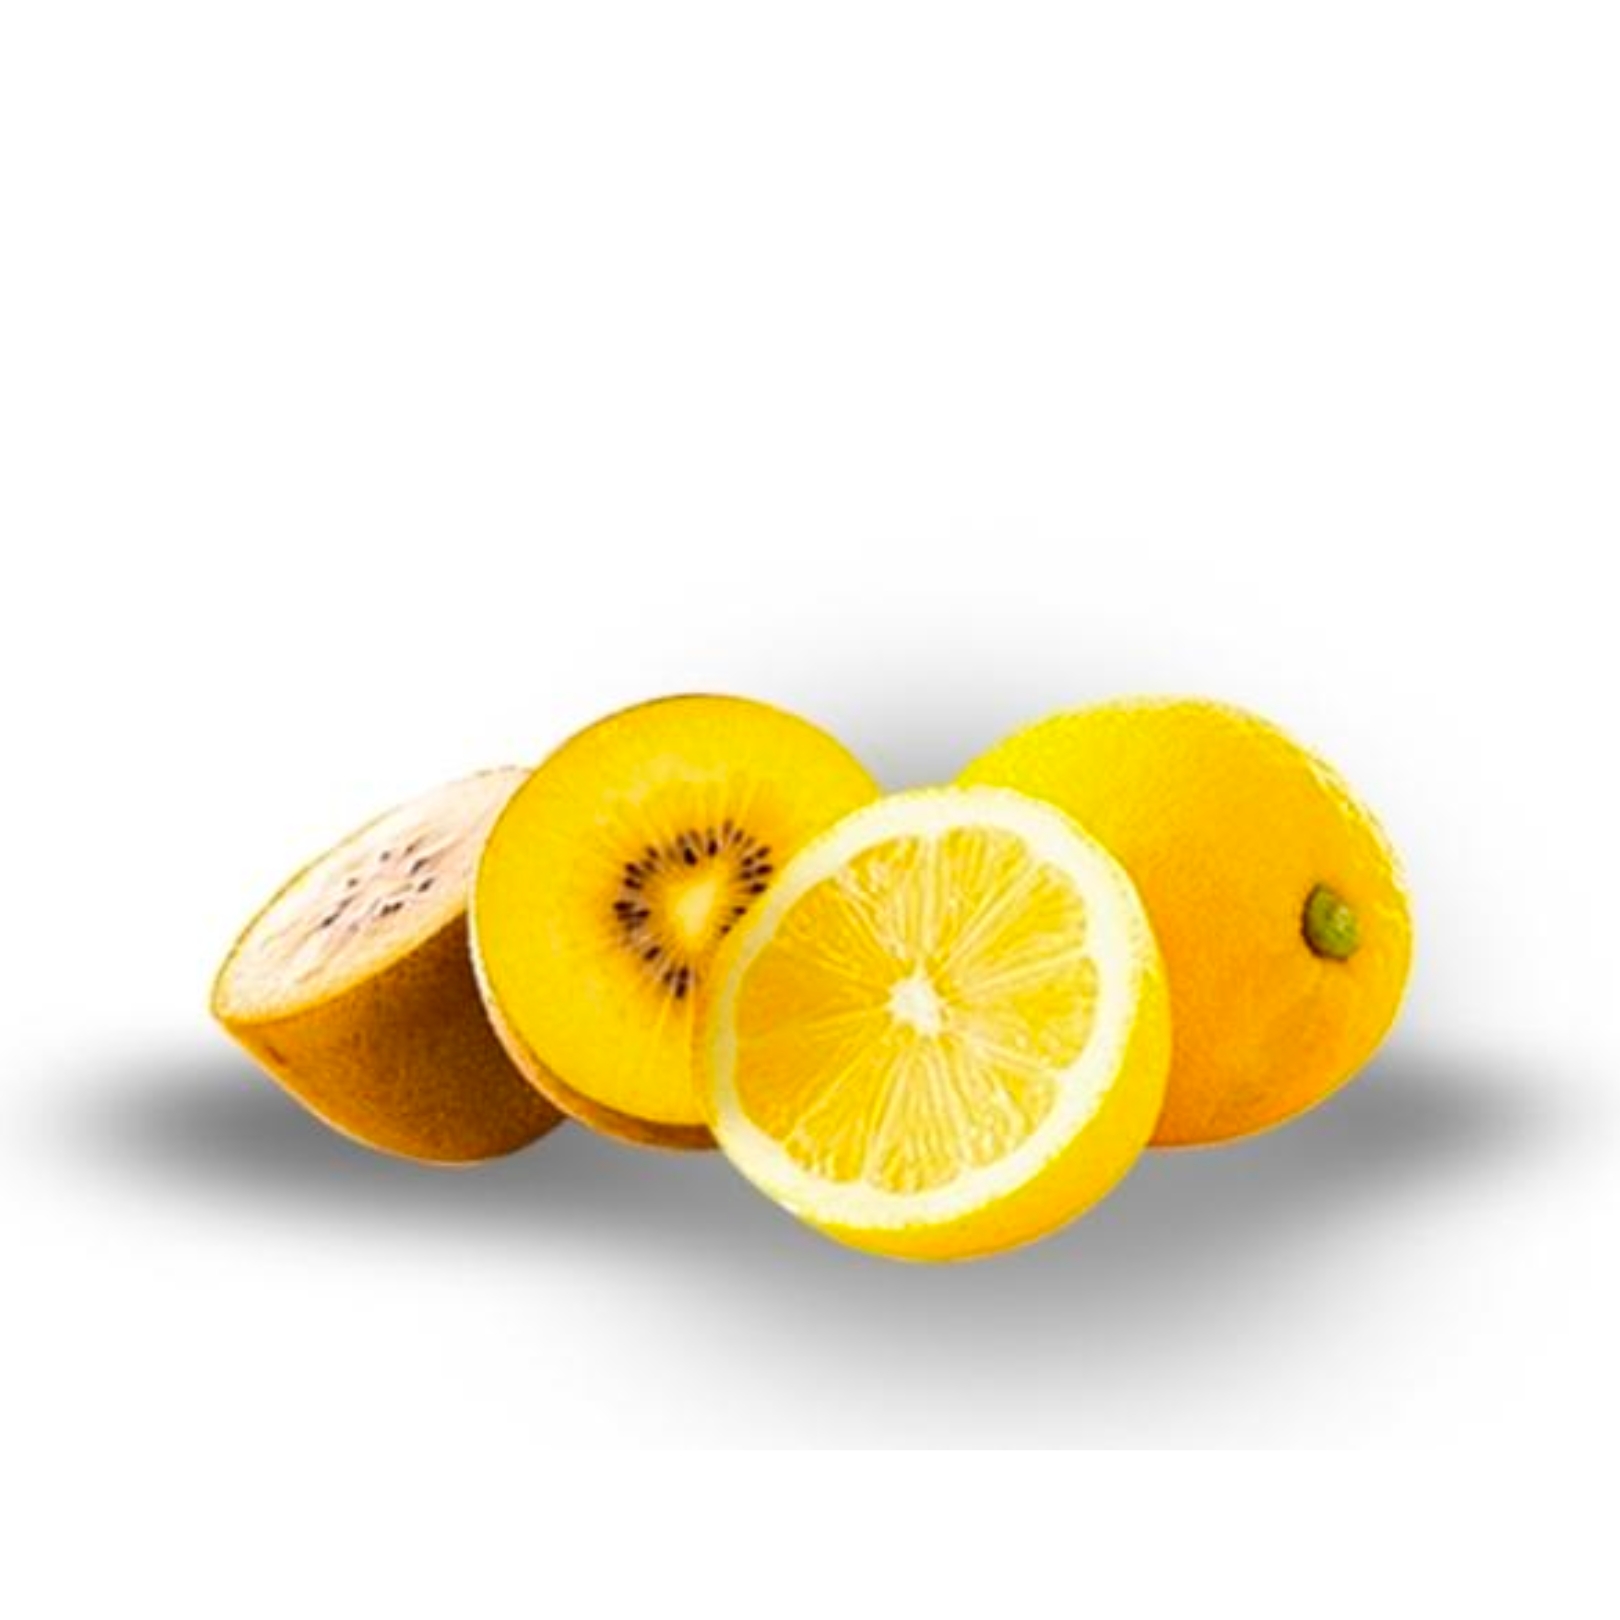 Buy Kiwifruit Lemon Online NZ